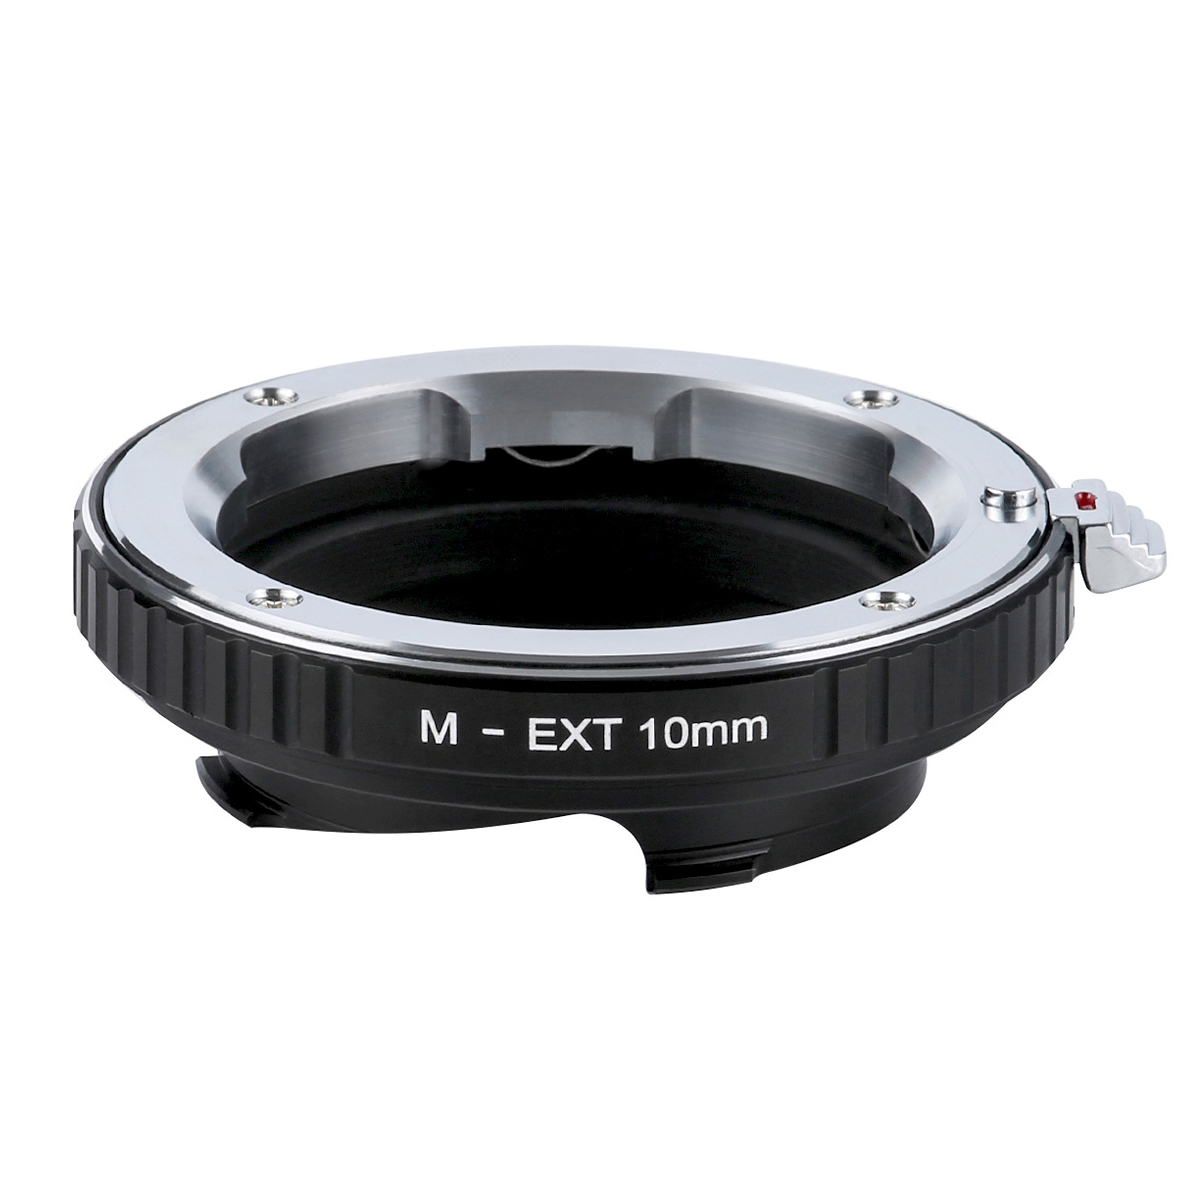 KF 100%品質保証 CONCEPT Concept レンズマウントアダプター KF-MM10 ライカMマウント接写リング 10mm ブランド激安セール会場